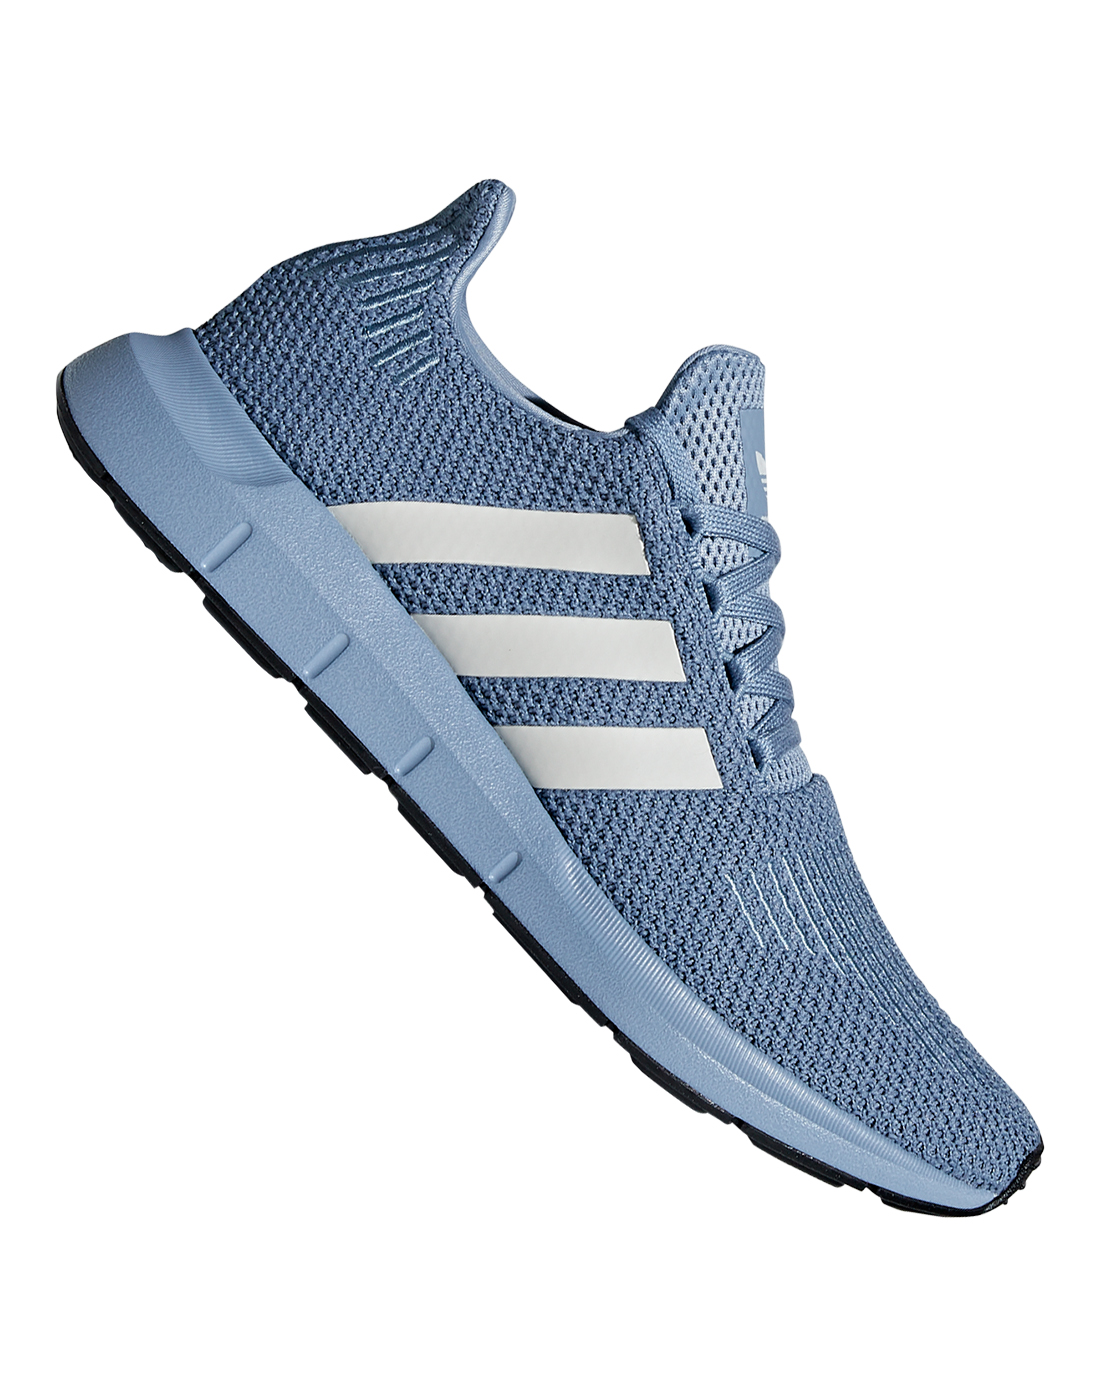 adidas swift run grey blue